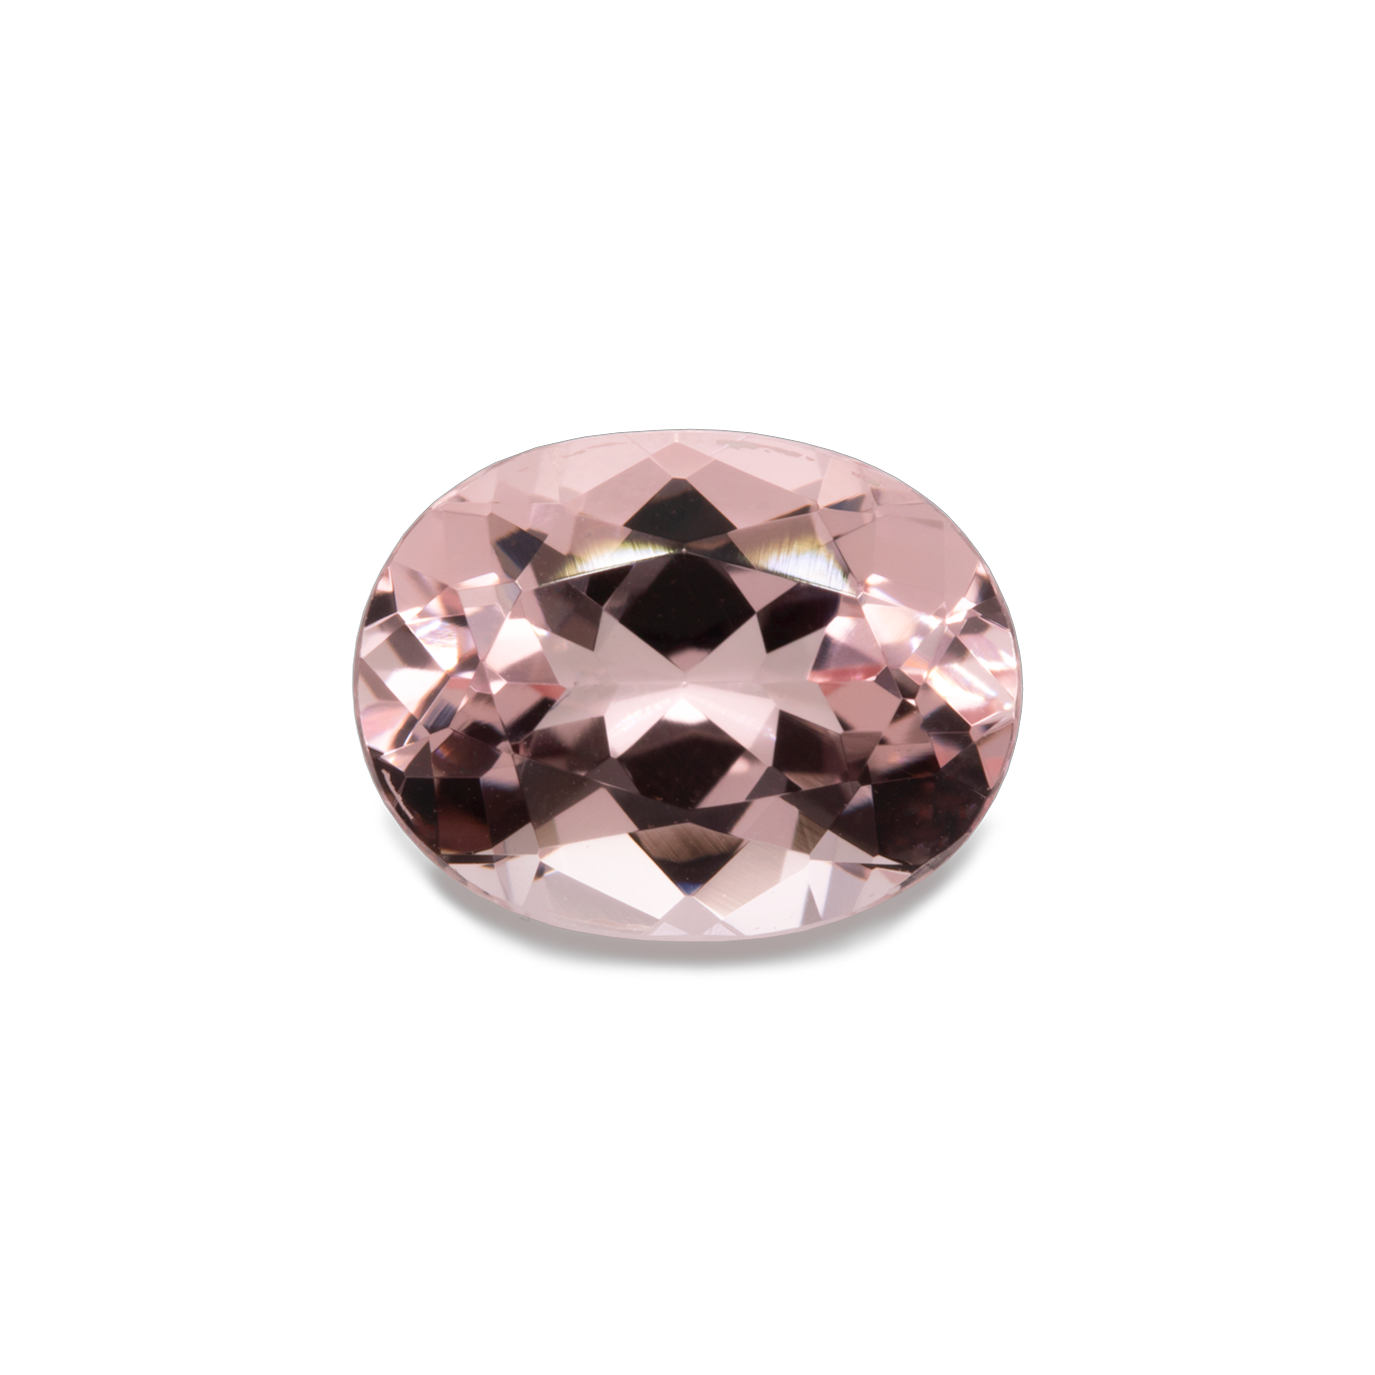 Morganite - pink, oval, 9x7 mm, 1.70-1.79 cts, No. MO18002